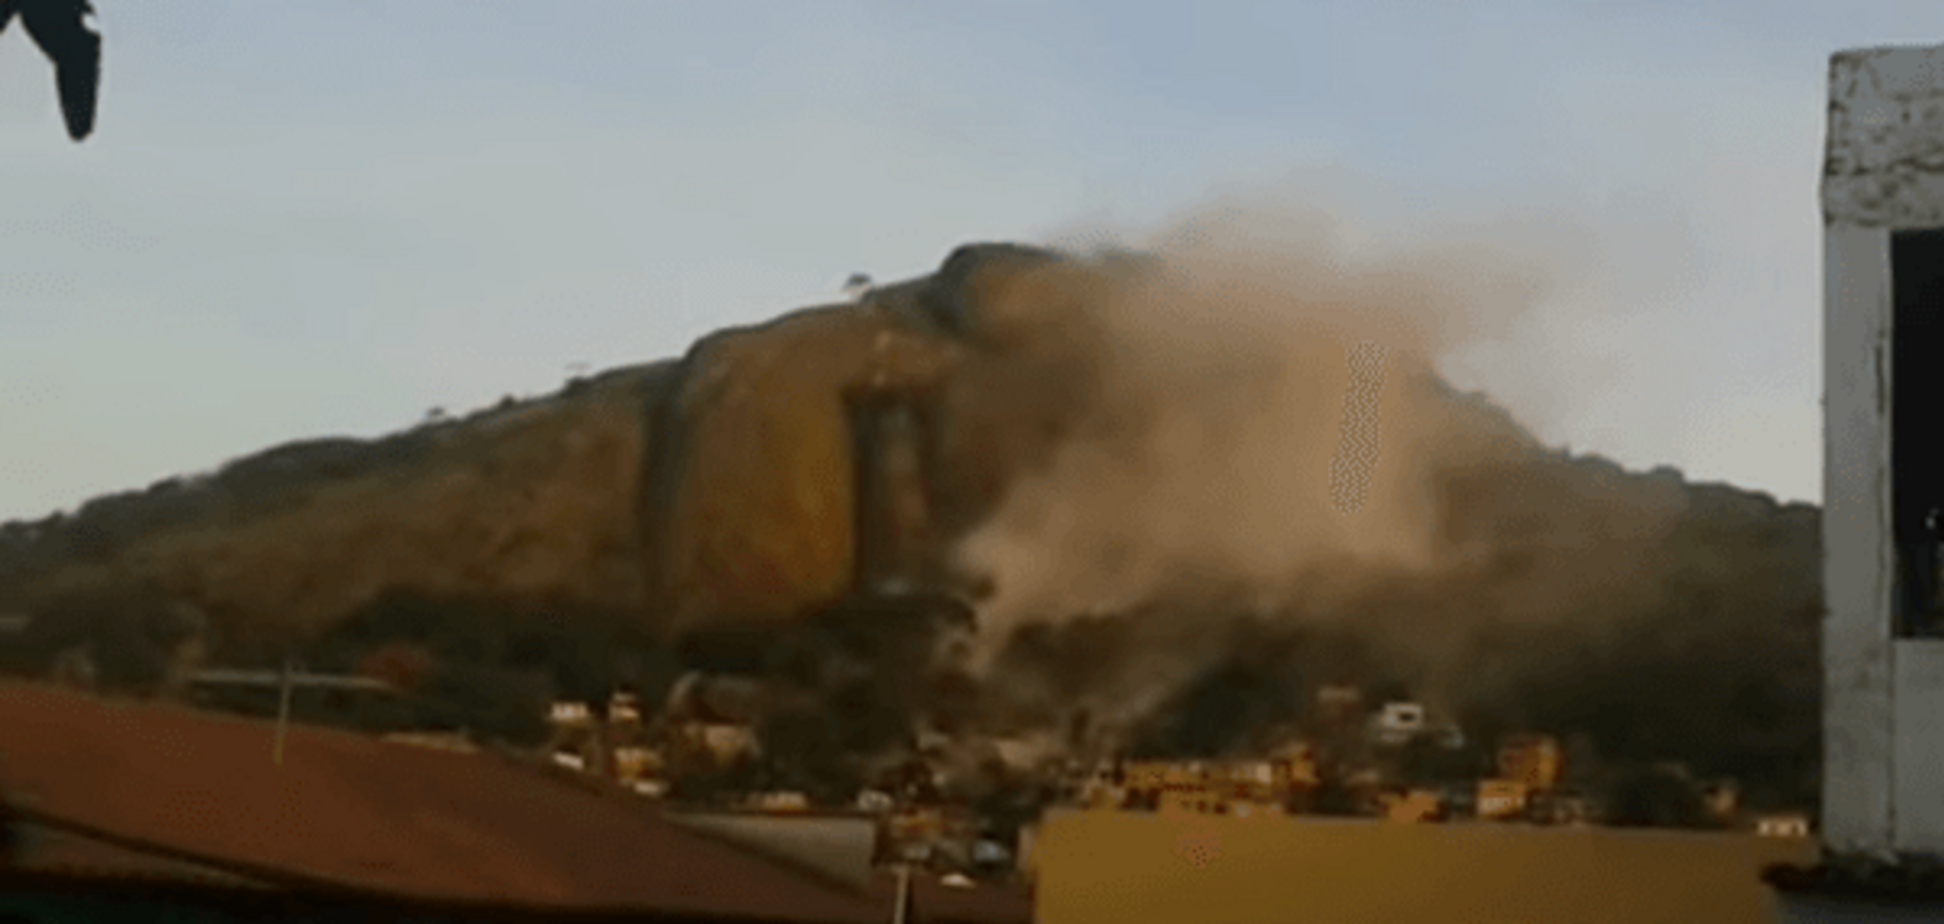 У Бразилії скеля обвалилася на житловий квартал, 15 постраждалих: моторошні фото і відео